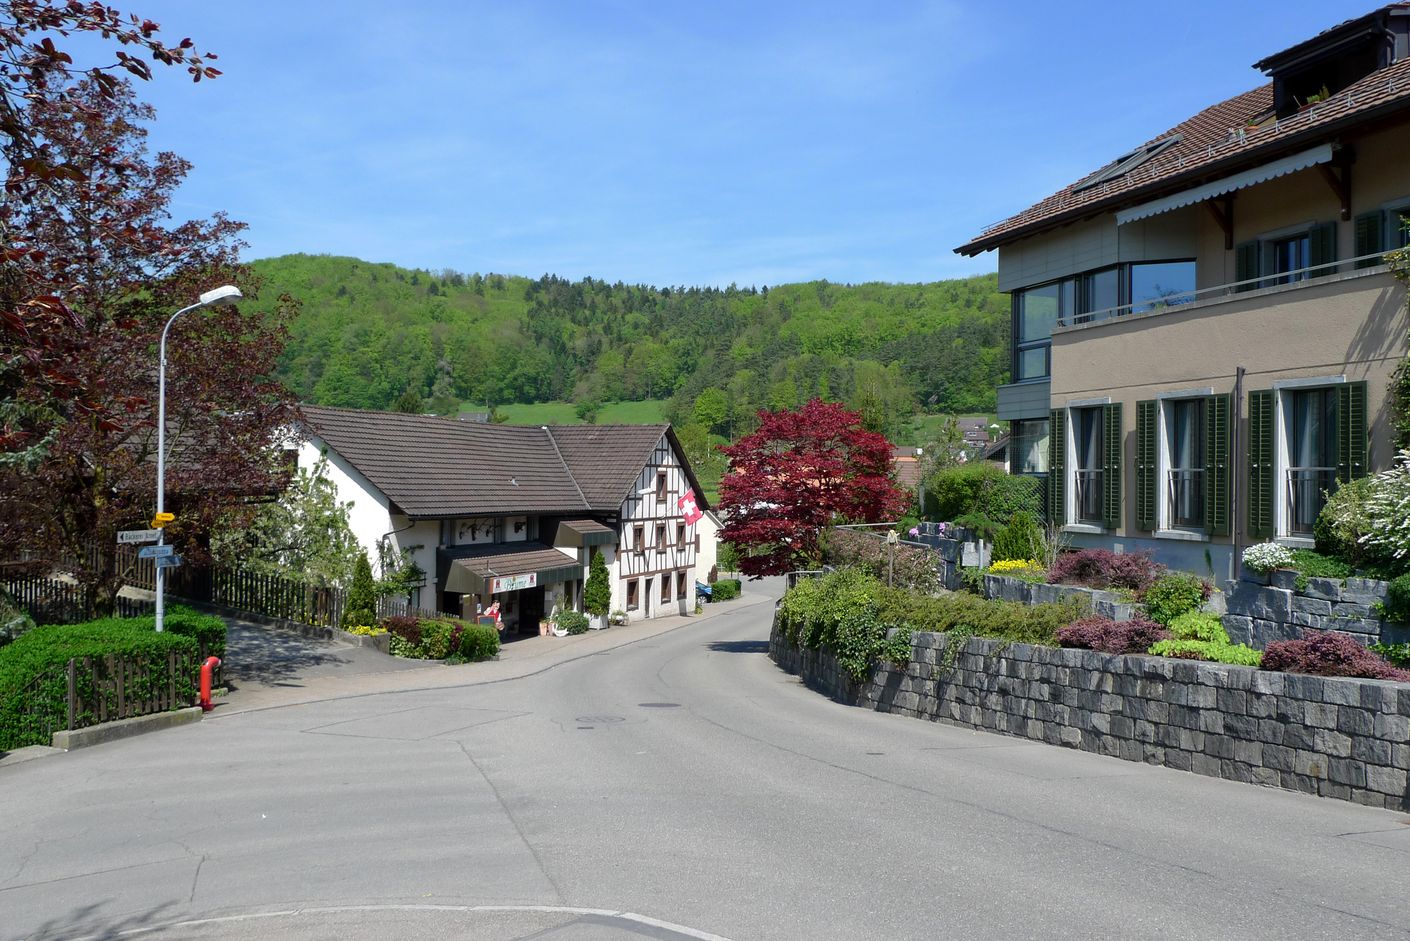 Dorfstrasse